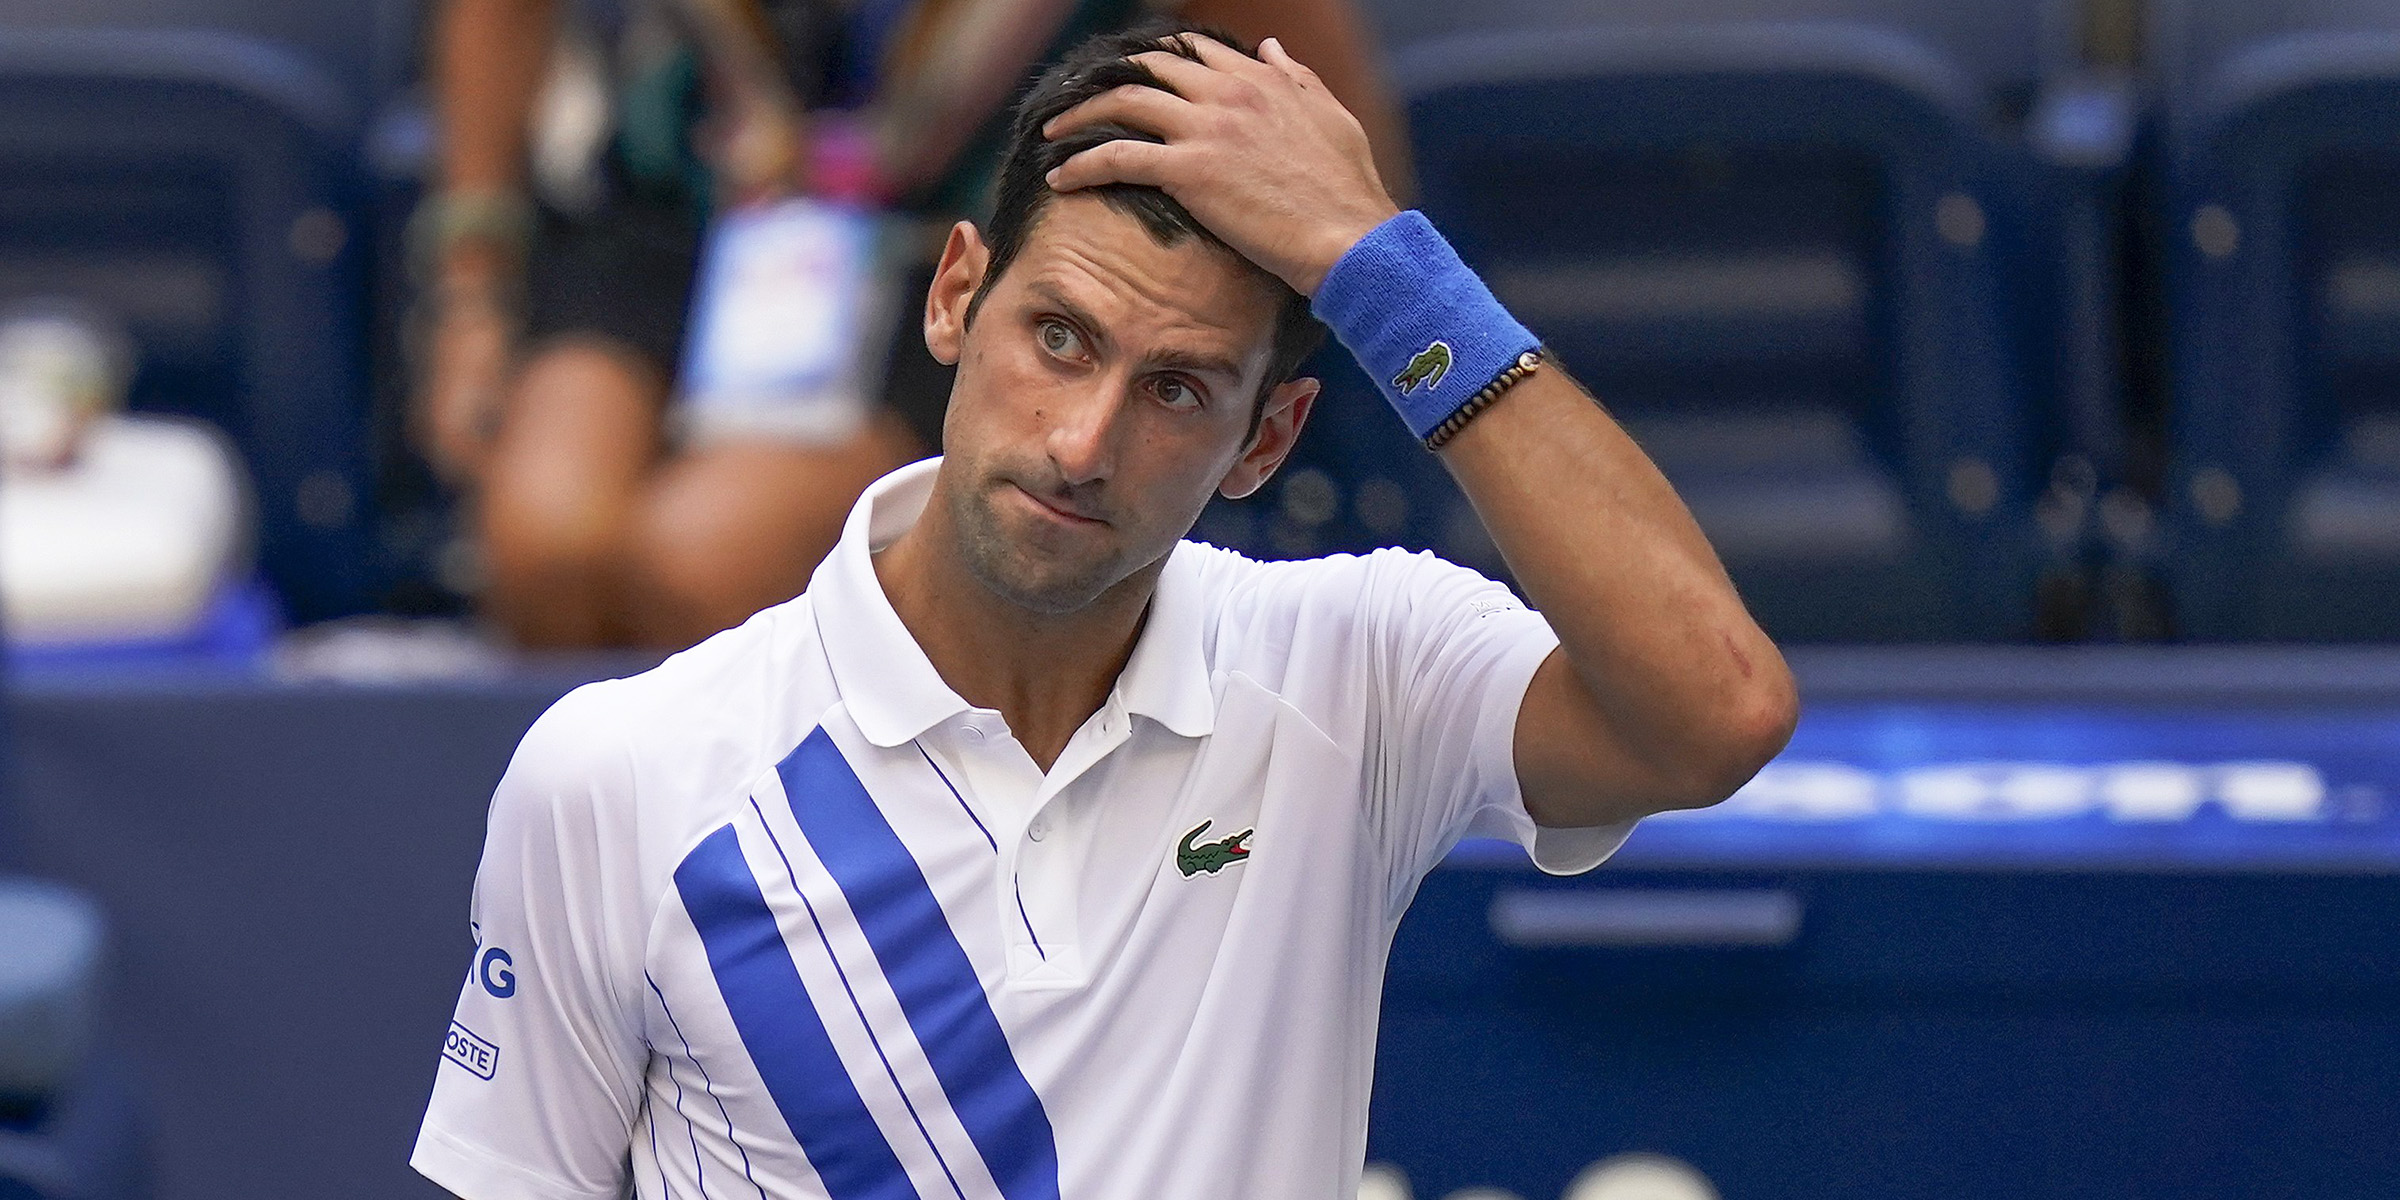 Gjykata federale në Australi merr vendim për Novak Djokovic